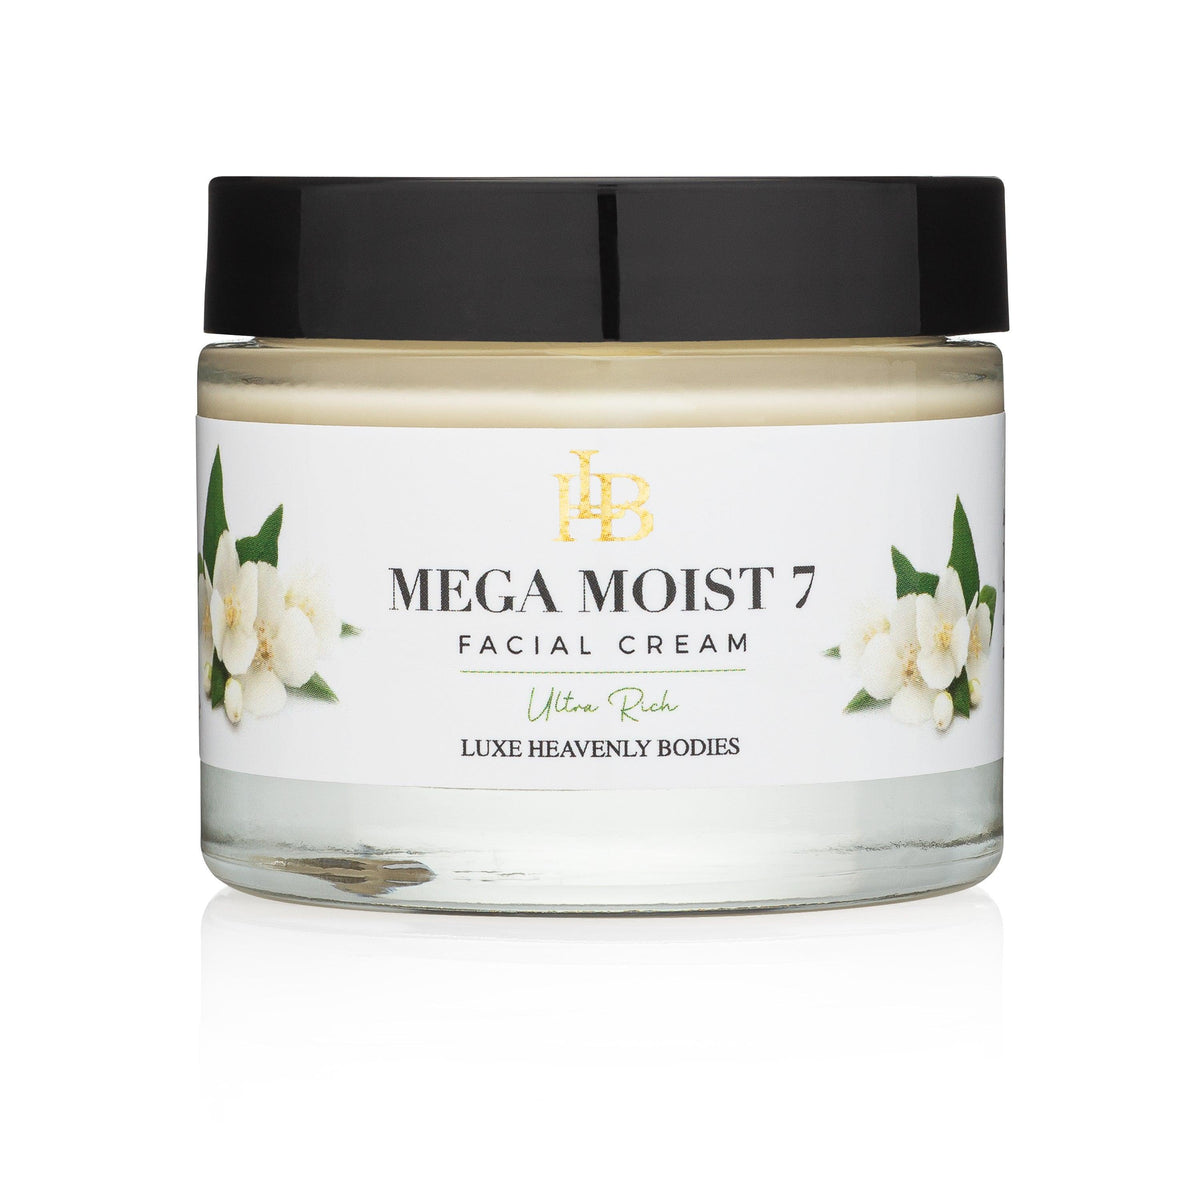 Mega Moist 7 Facial Cream - LUXE Heavenly Bodies